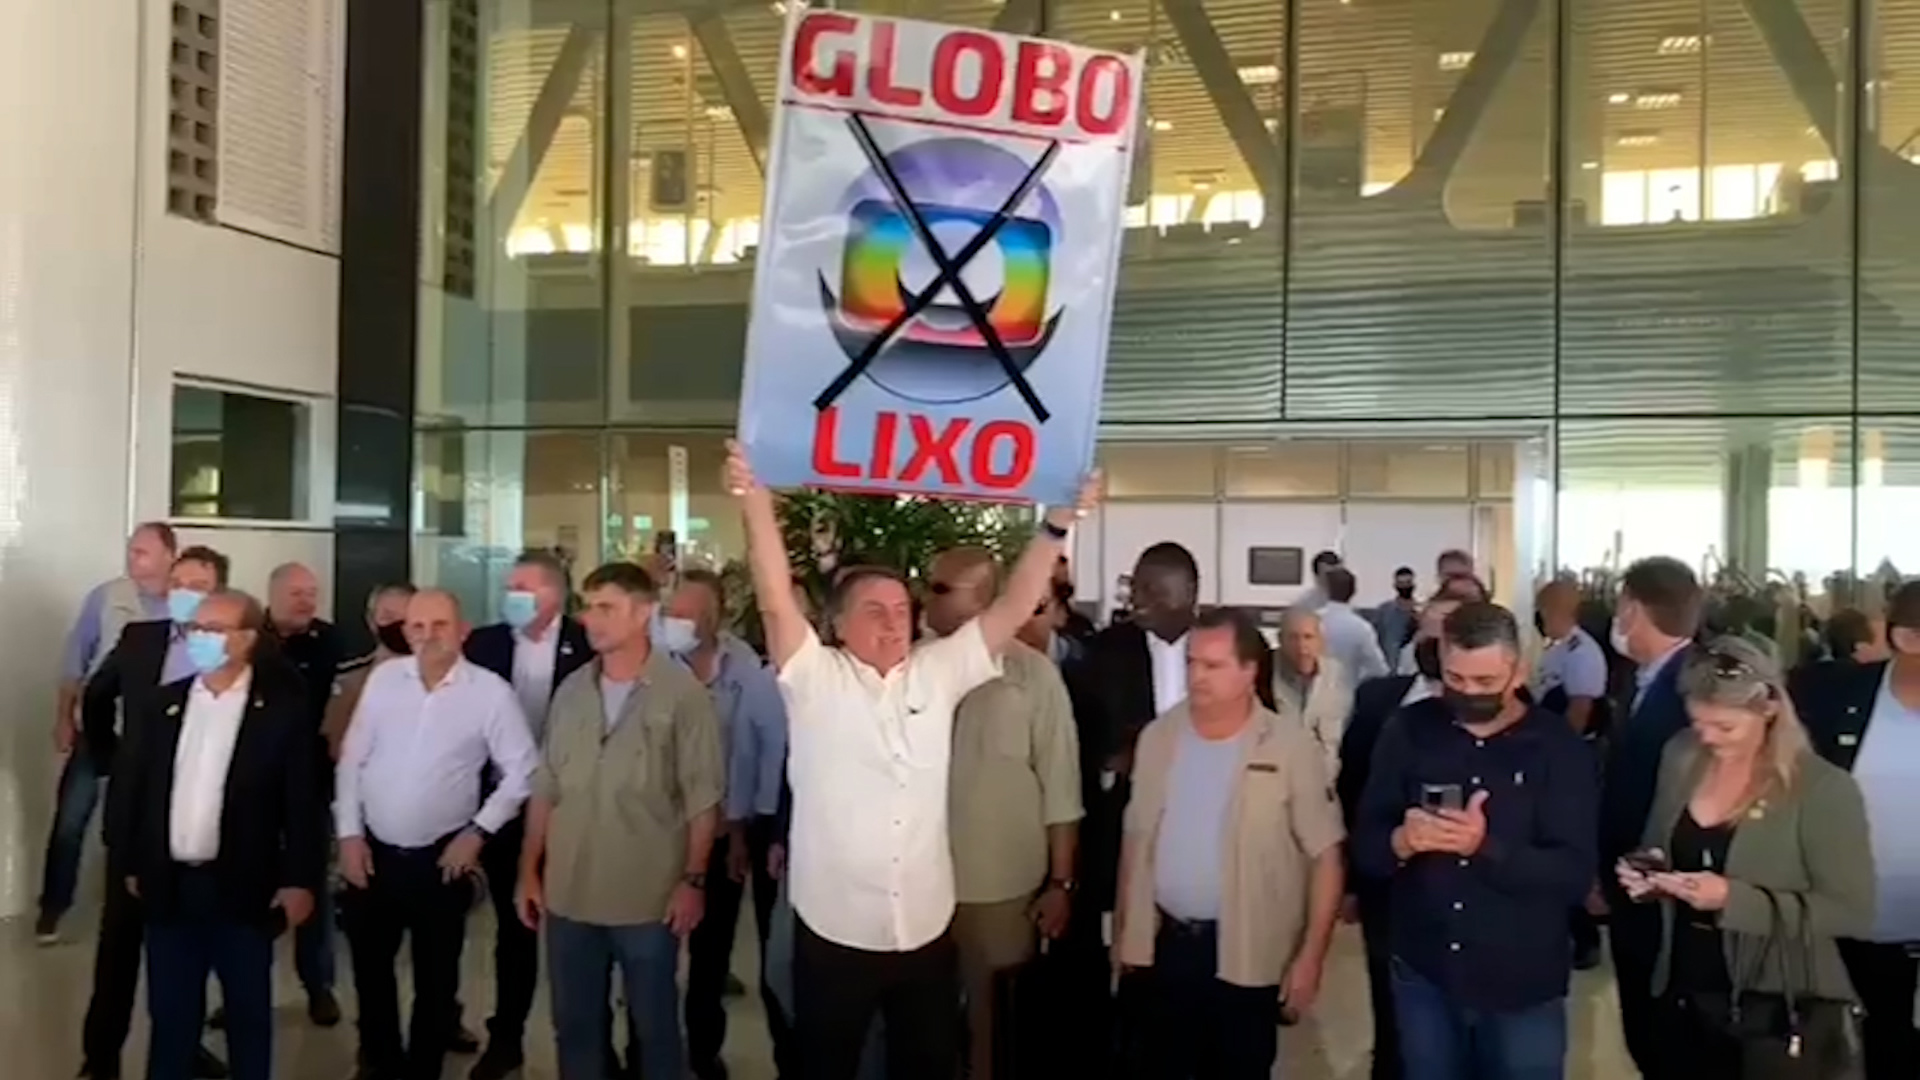 Bolsonaro muda valores repassados à emissoras. Na foto, Bolsonaro segura uma placa escrita Globolixo ao lado de aliados